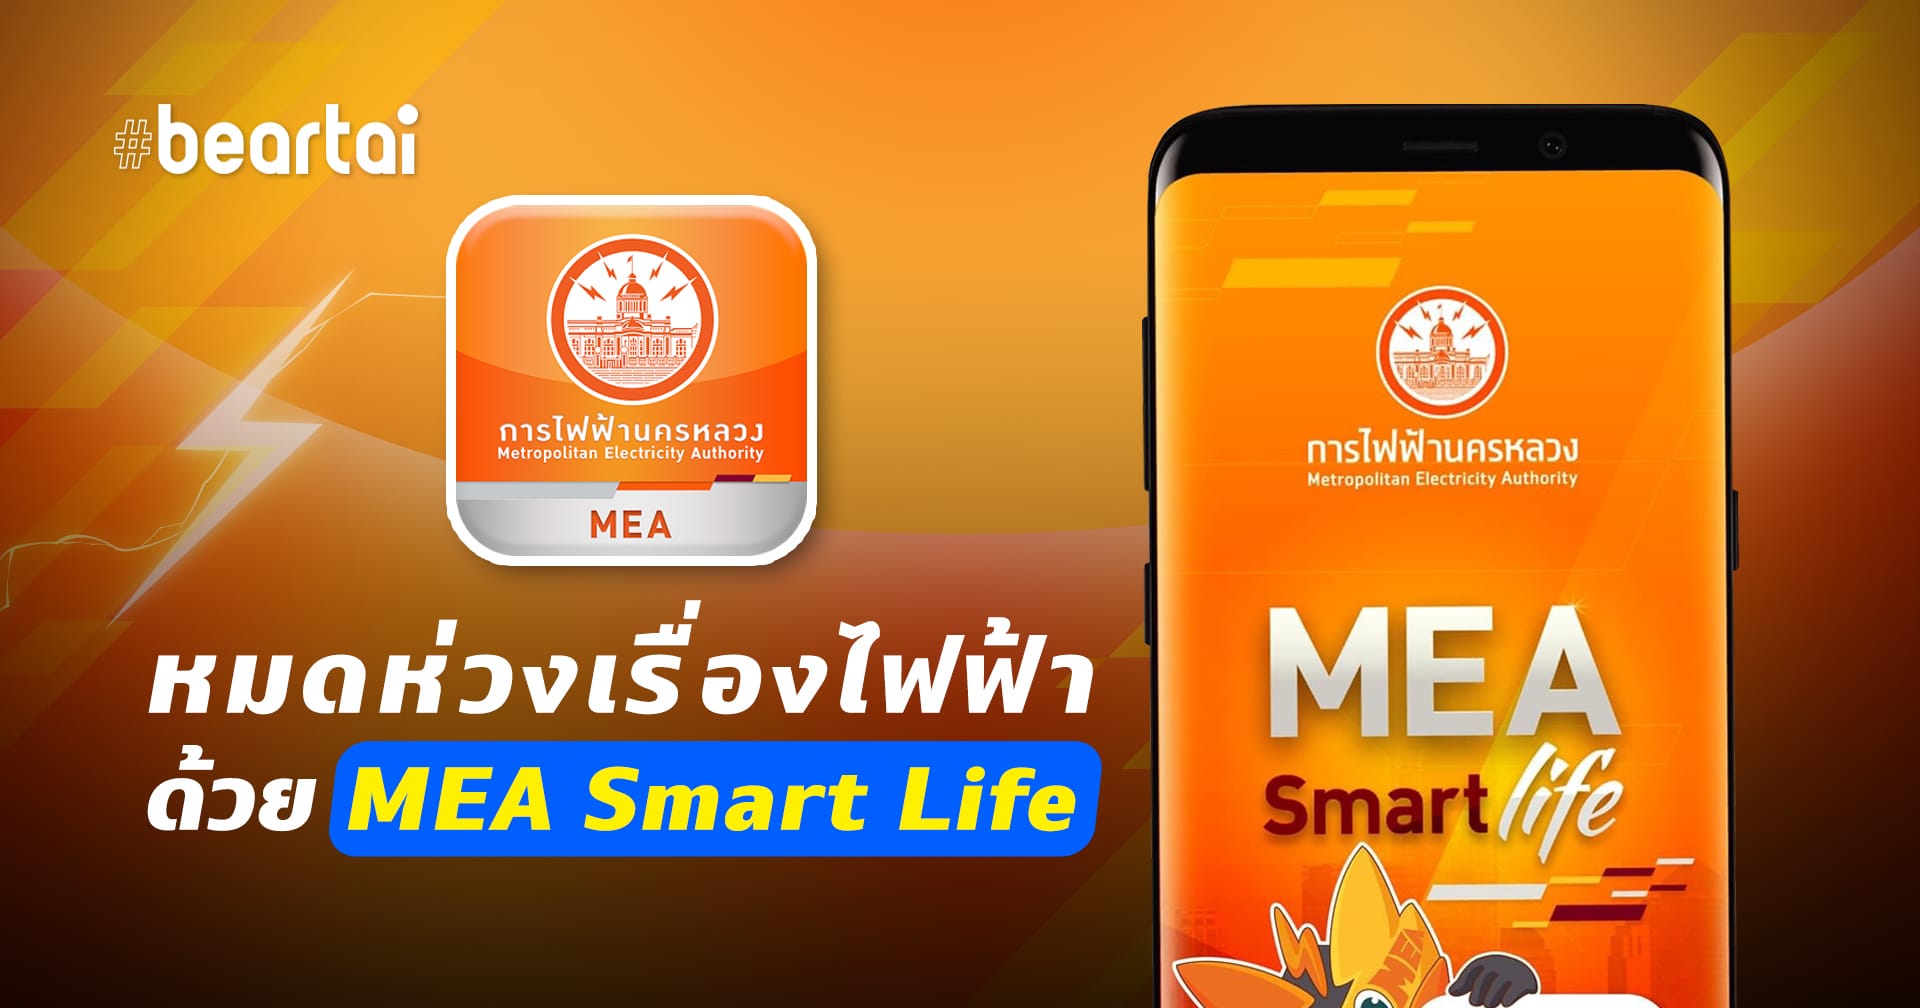 หมดห่วงเรื่องไฟฟ้าด้วยแอป MEA Smart Life ใช้ง่าย โหลดฟรี!